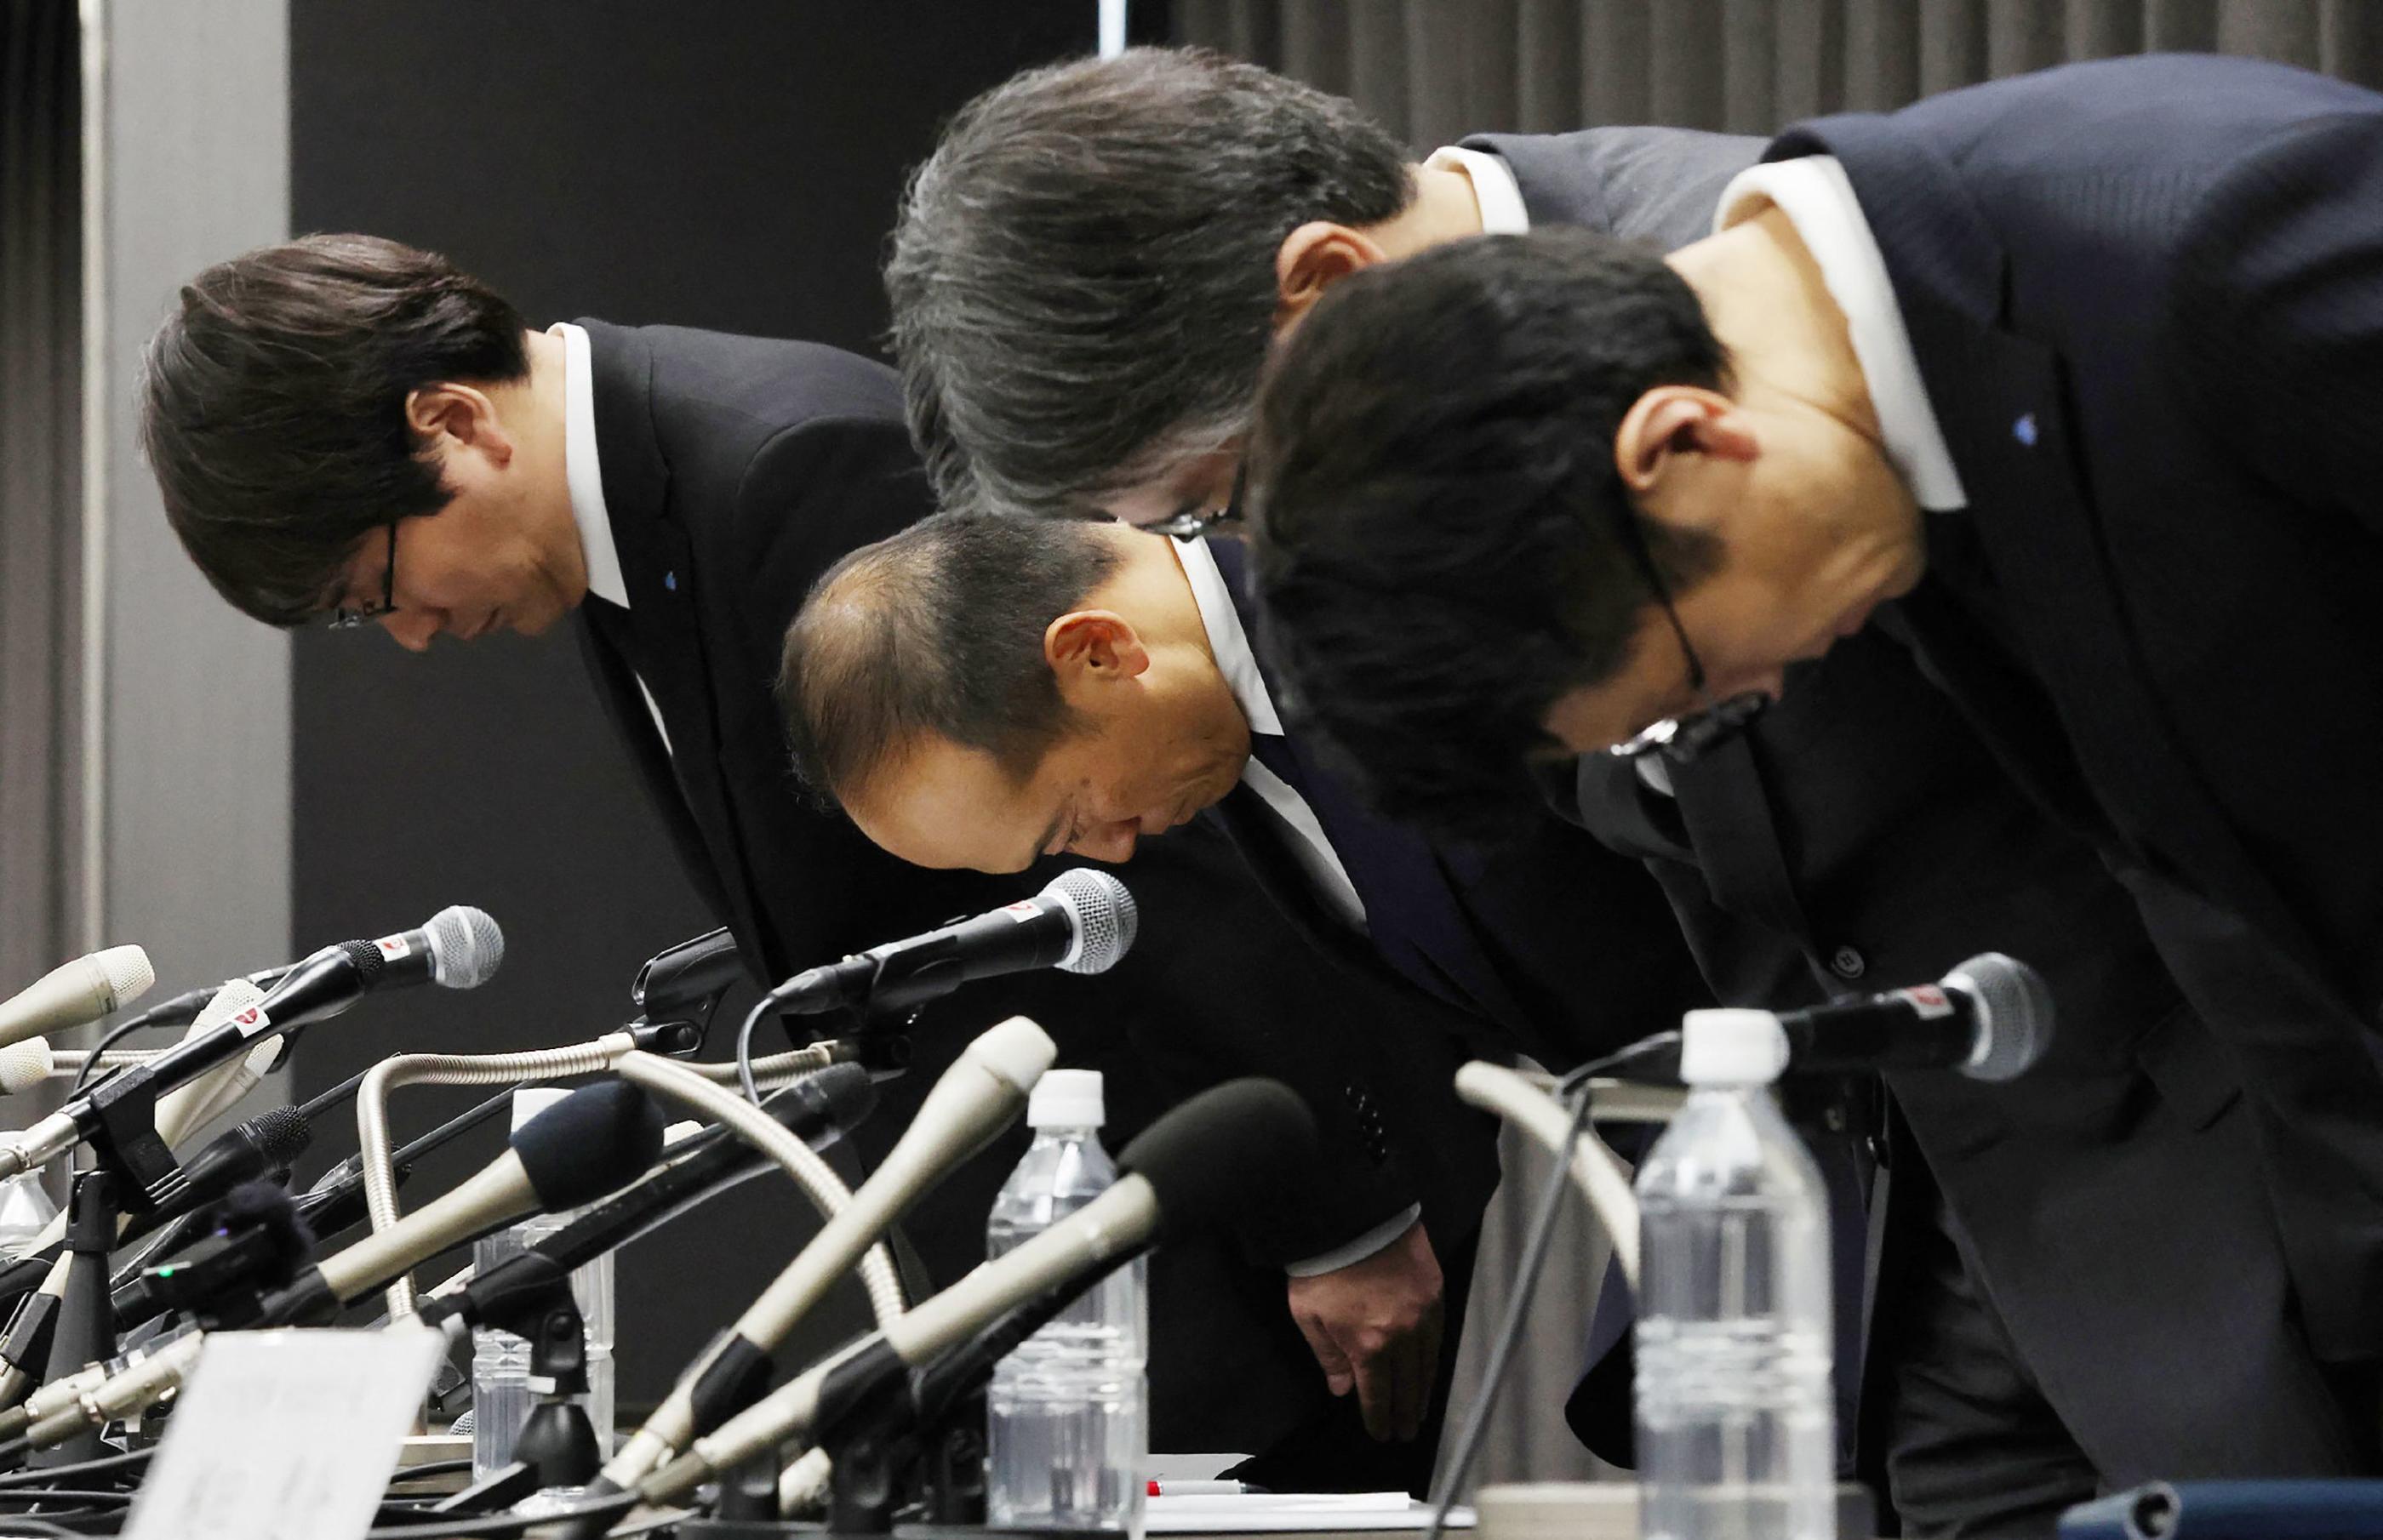 Les dirigeants du groupe Kobayashi Pharmaceutical ont incliné la tête face à des journalistes en signe d'excuse, après plusieurs morts suspectes parmi les consommateurs de leurs produits. JIJI Press / AFP / Japan OUT